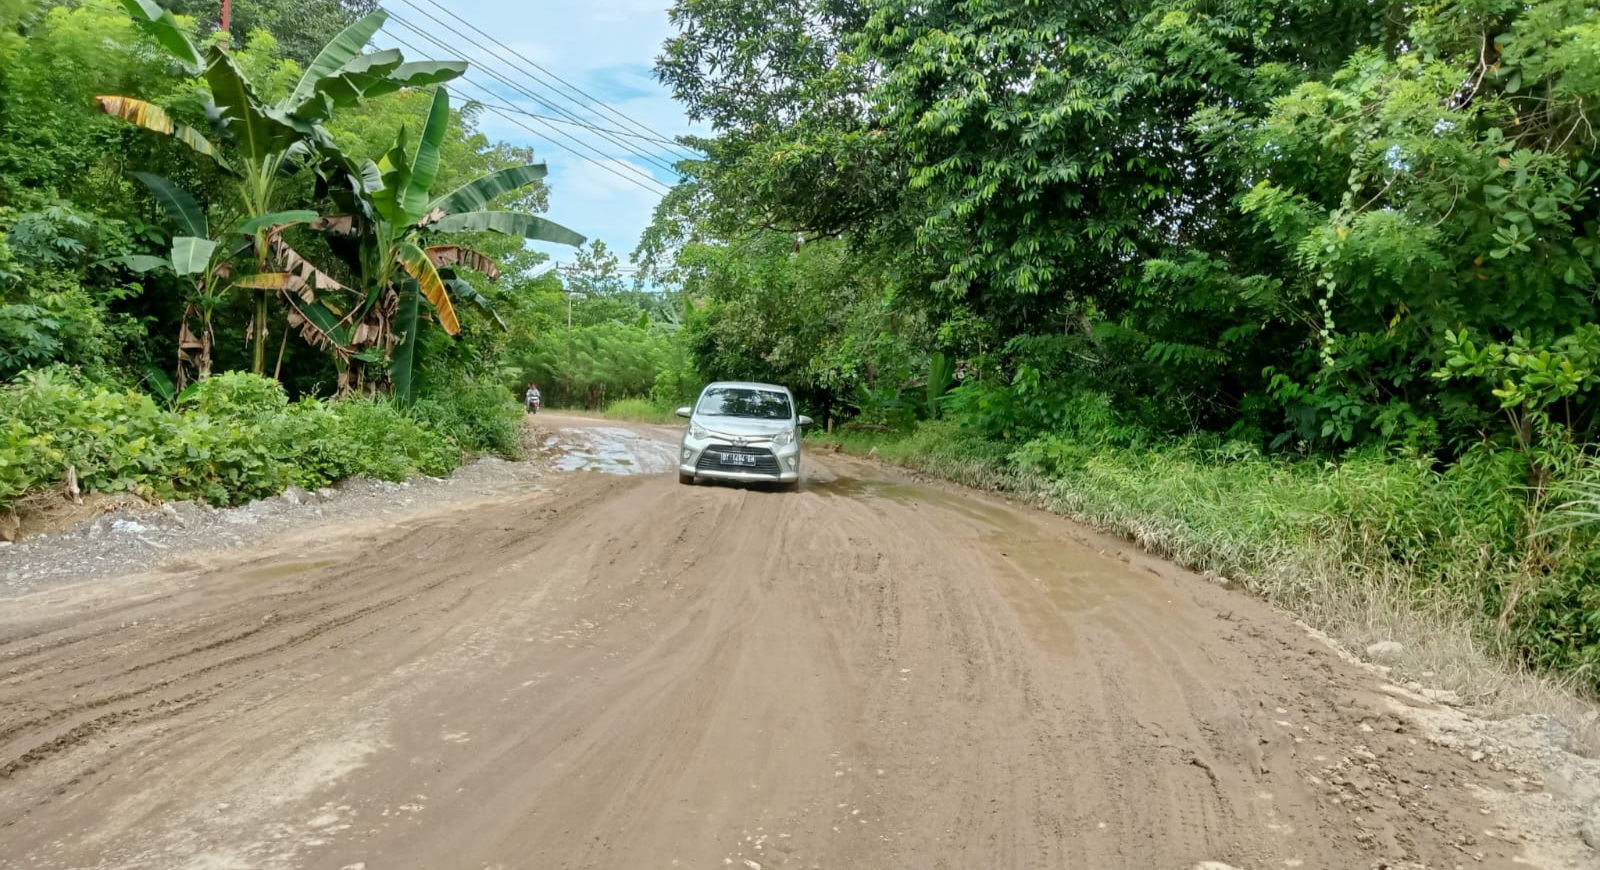 Pemerintah dan DPRD Sulawesi Tenggara Hanya Berjanji, Jalan Poros Andoolo - Tinanggea Rusak Parah